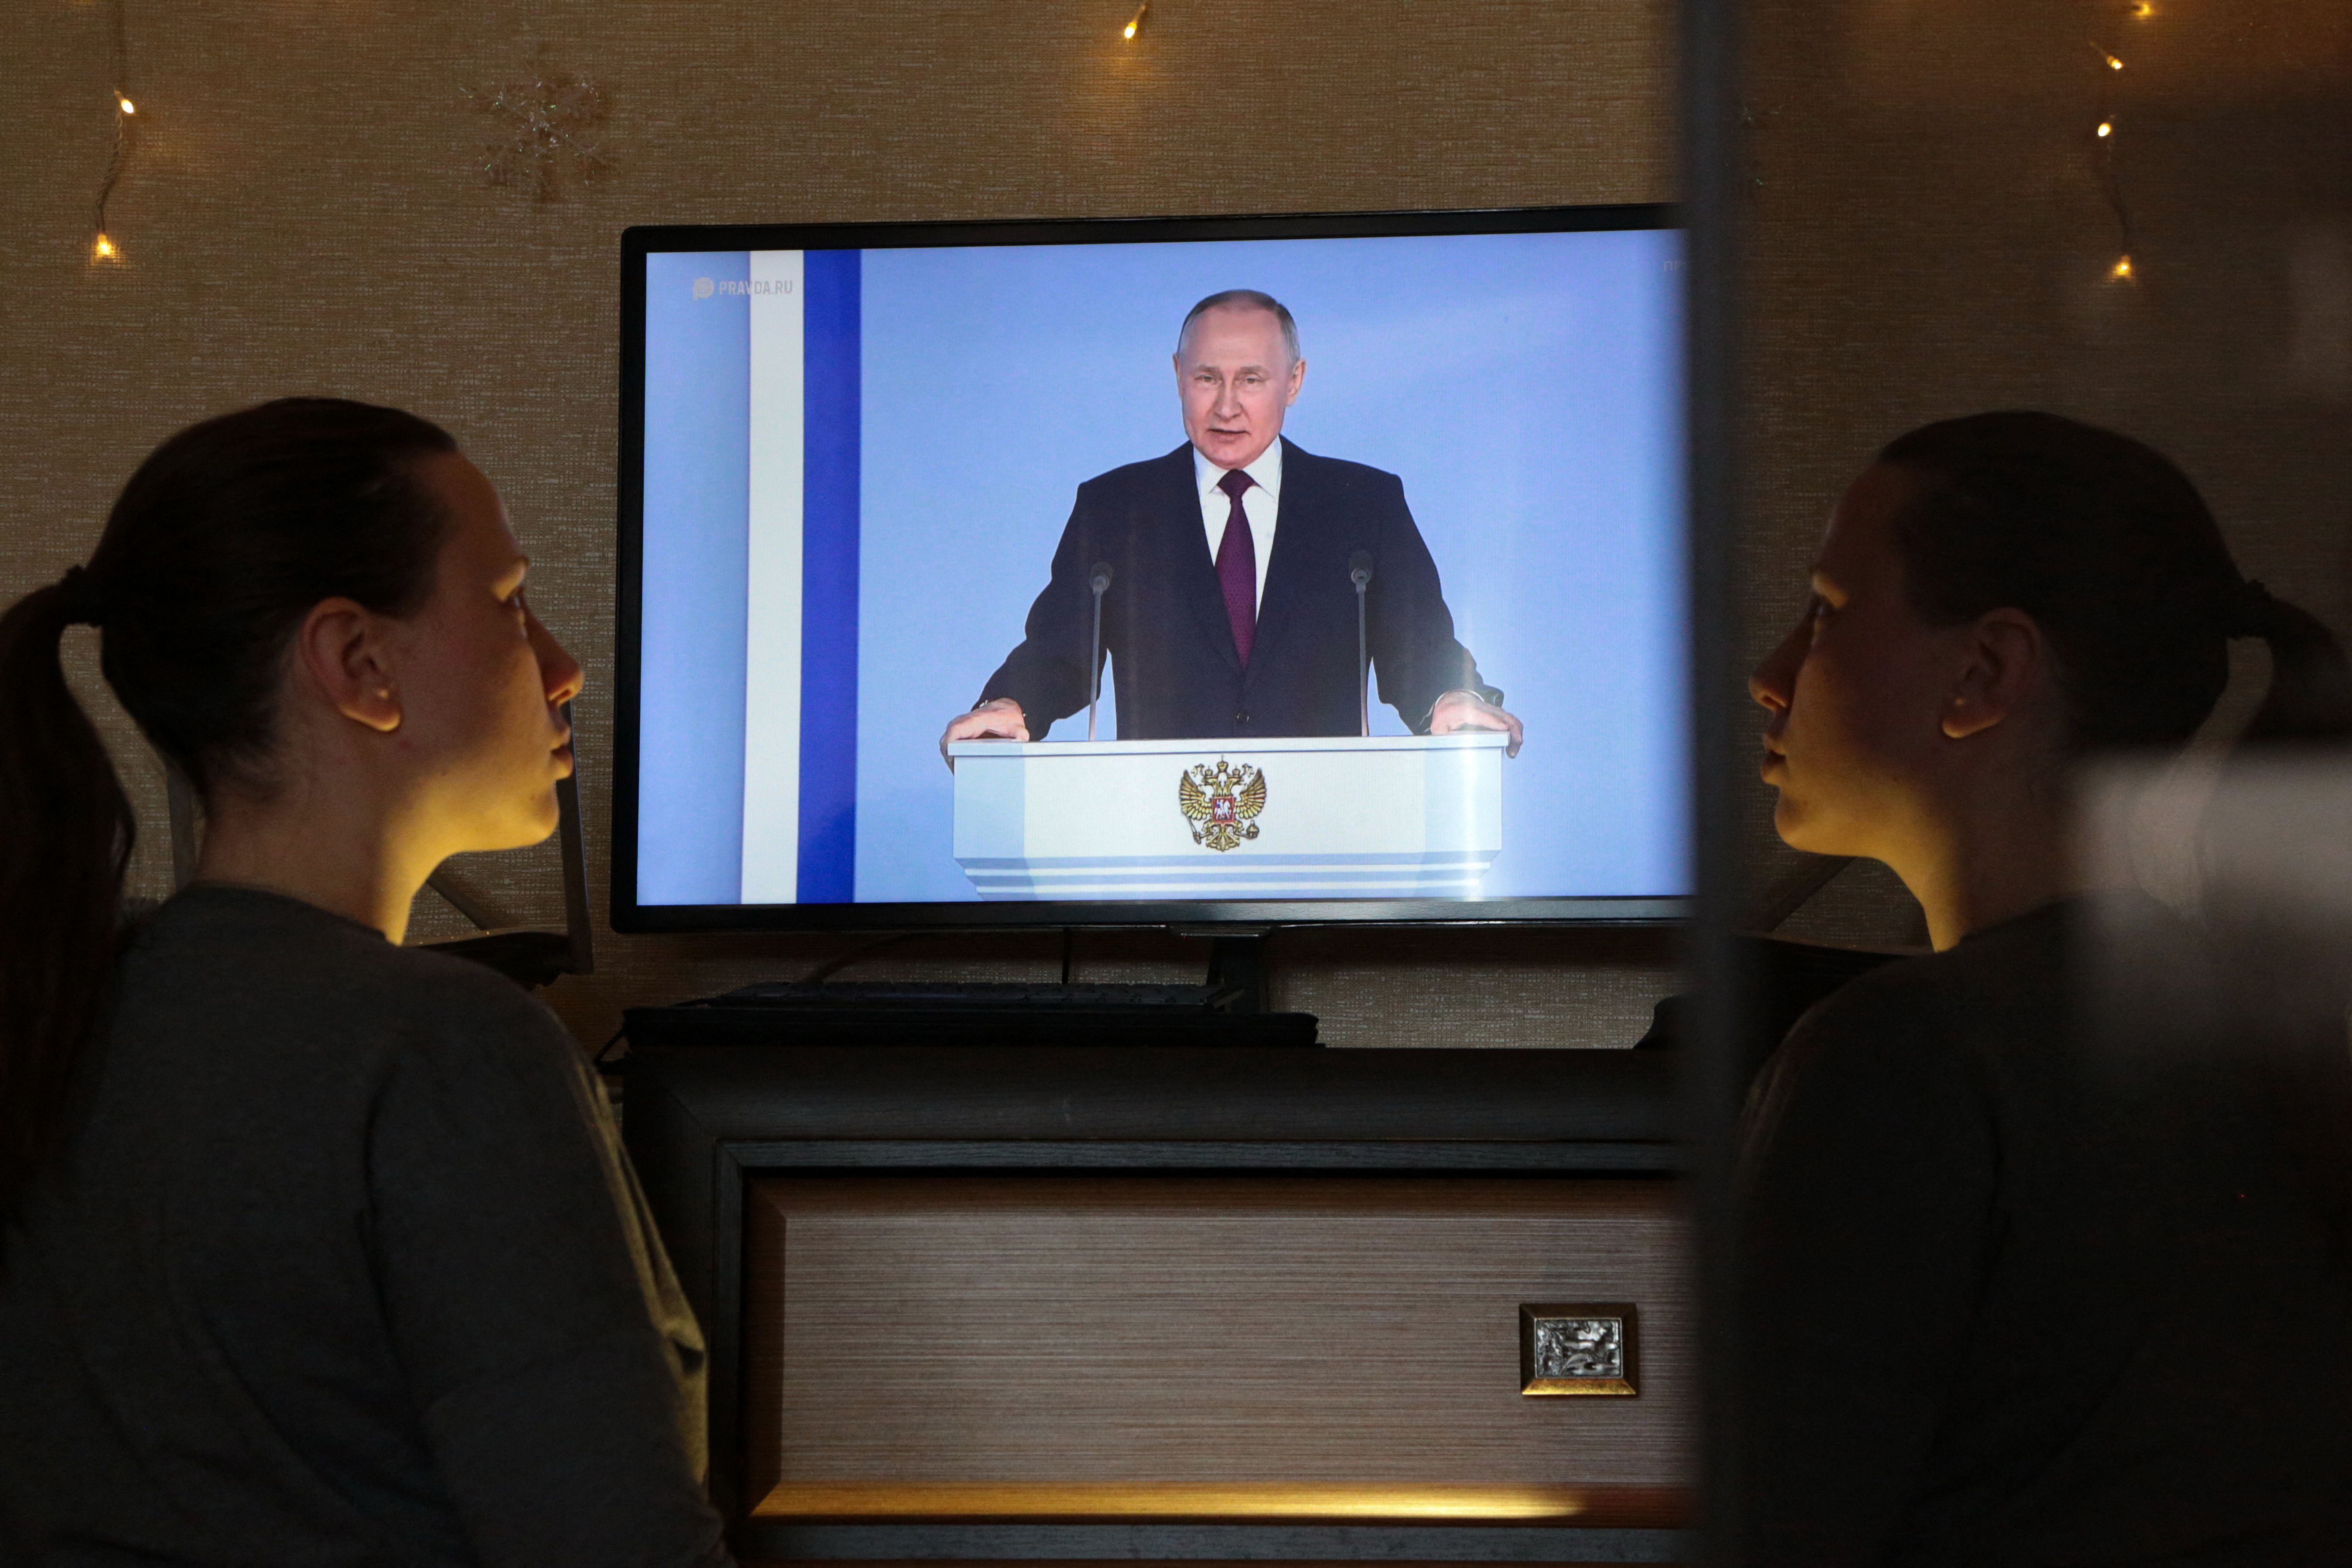 Putin on a TV broadcast